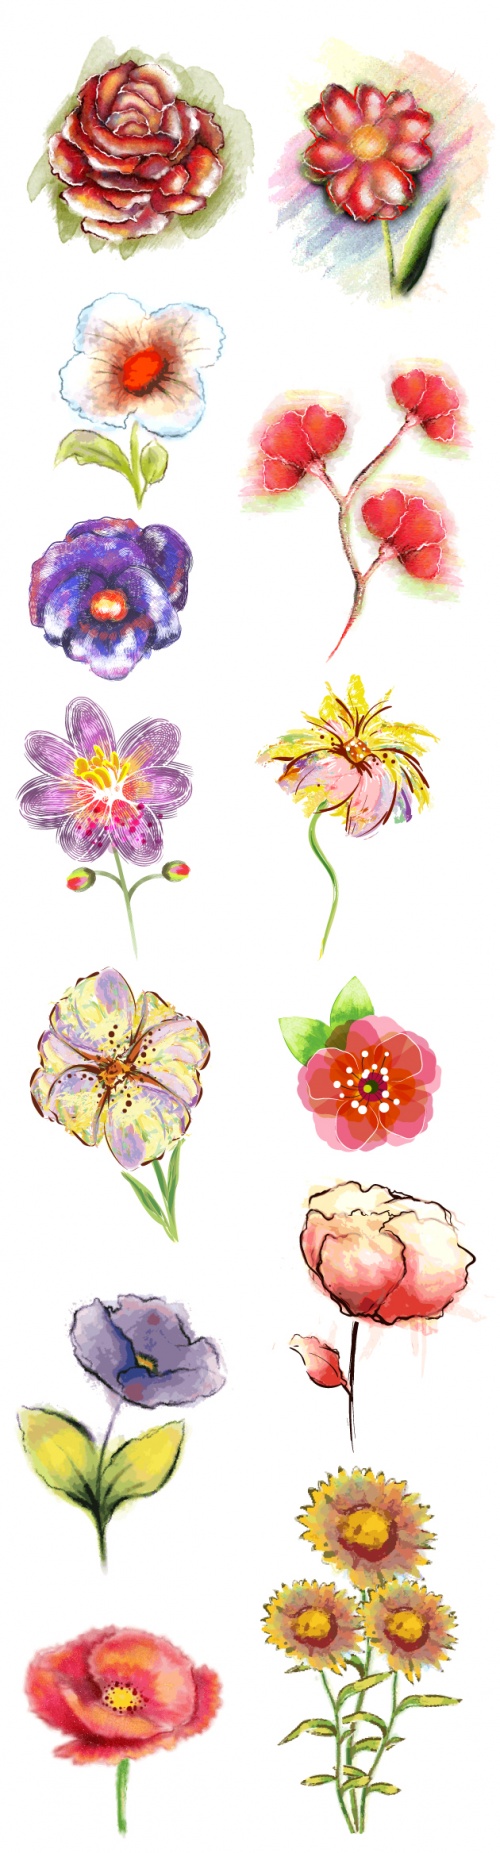 Designtnt - Vector Floral Ornaments Set 5